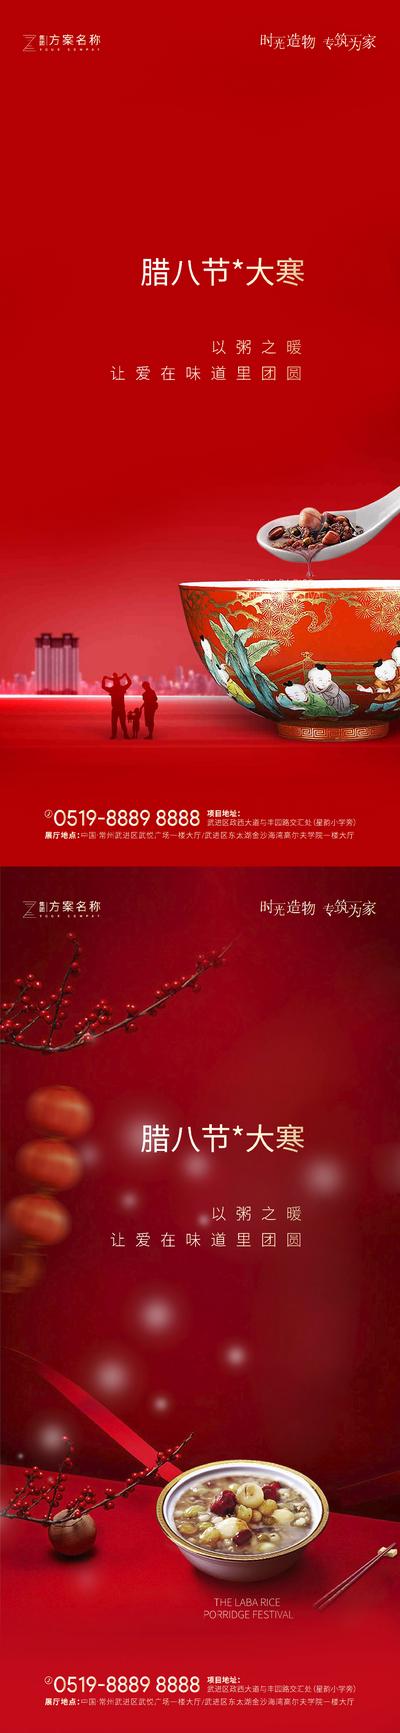 南门网 海报 房地产 二十四节气 中国传统节日 大寒 腊八 腊八粥